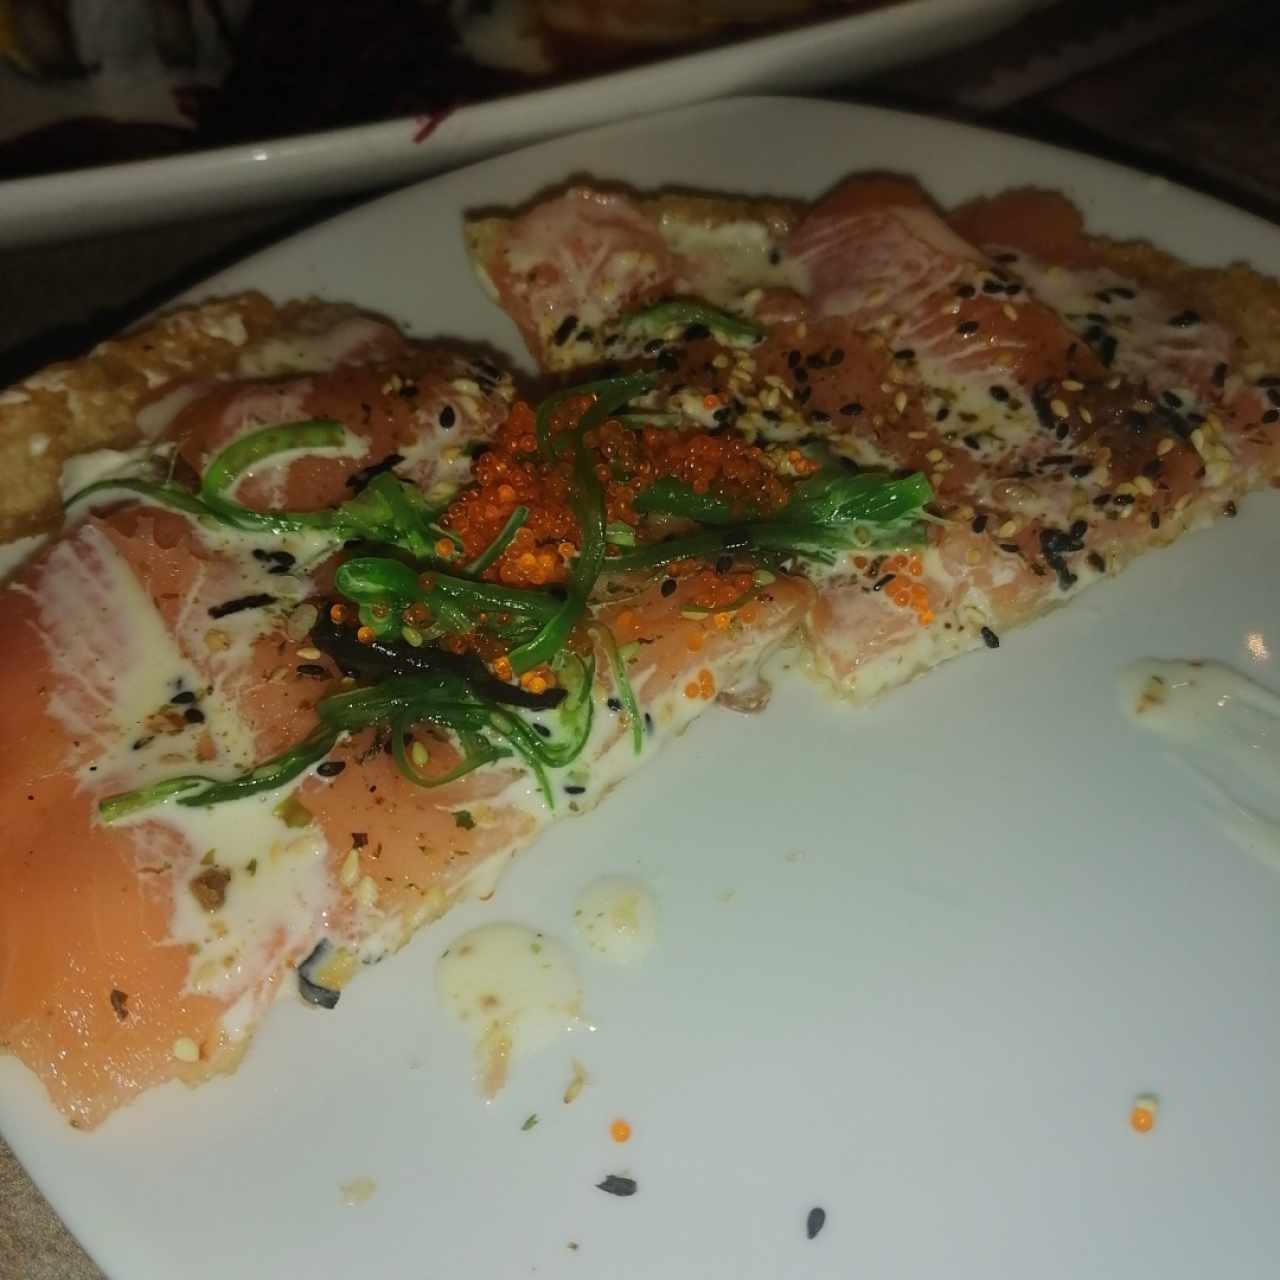 Pizza de Sushi de Salmón